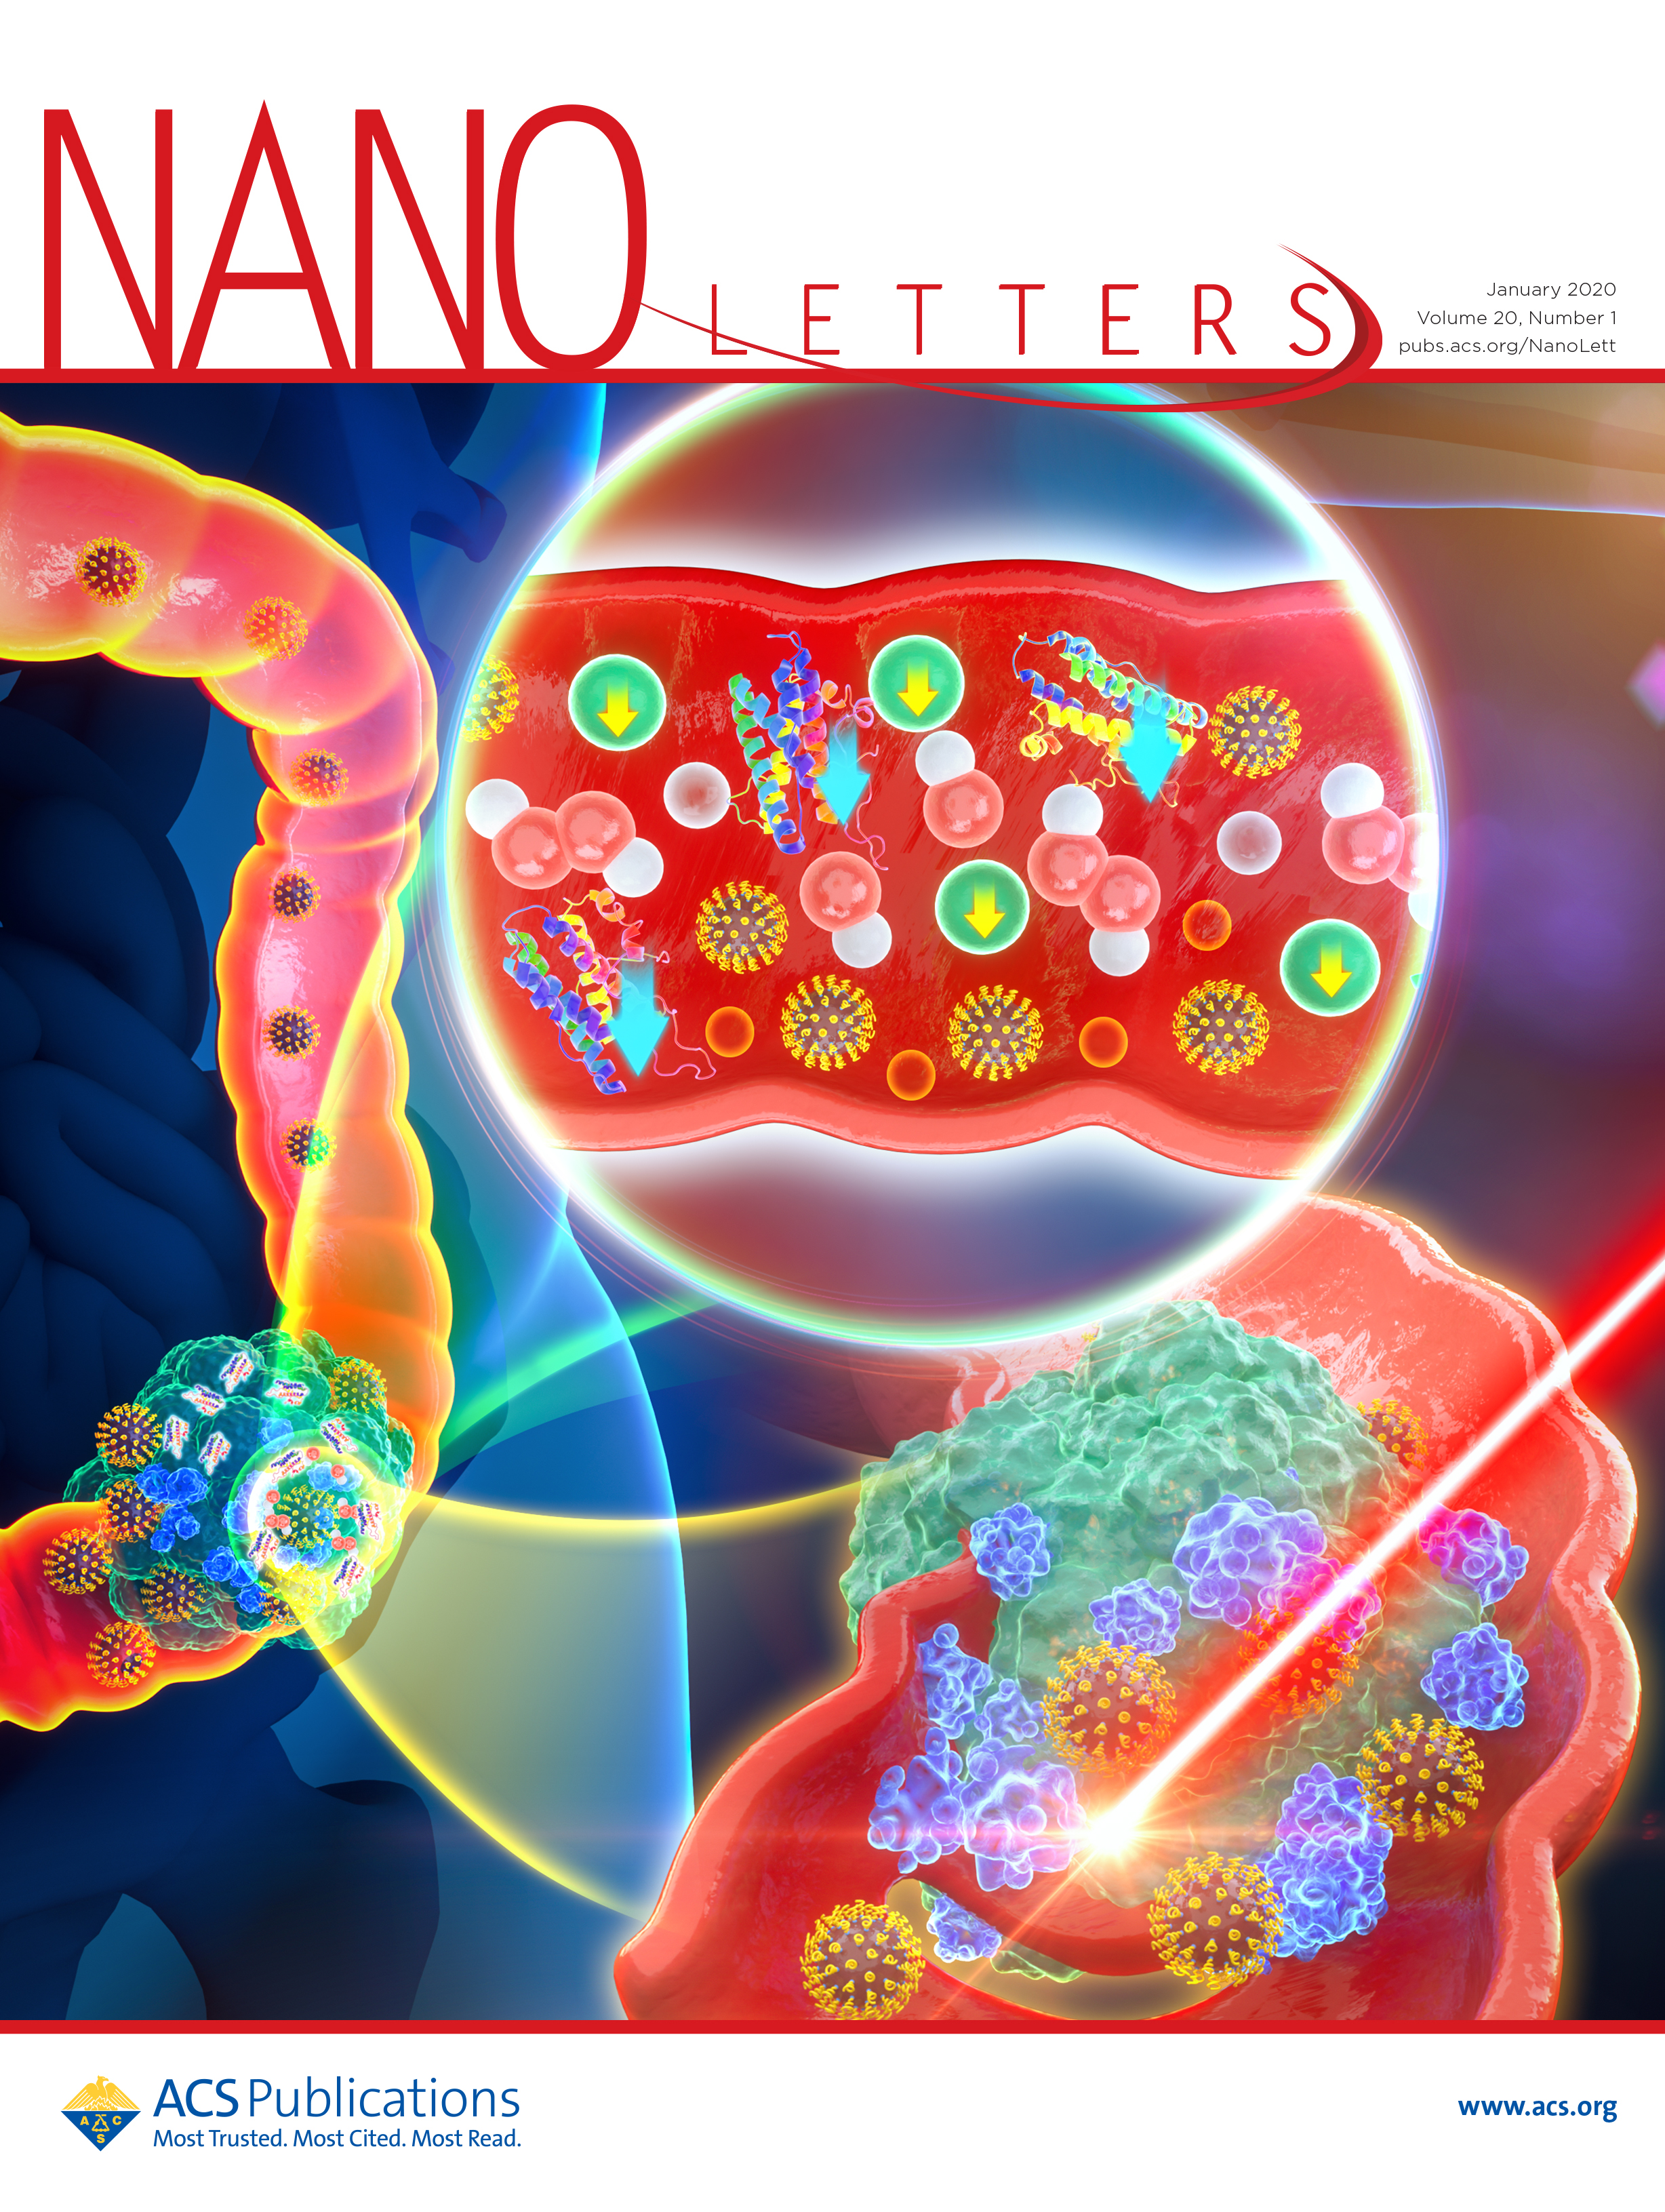 合肥工业大学 Nano Letters